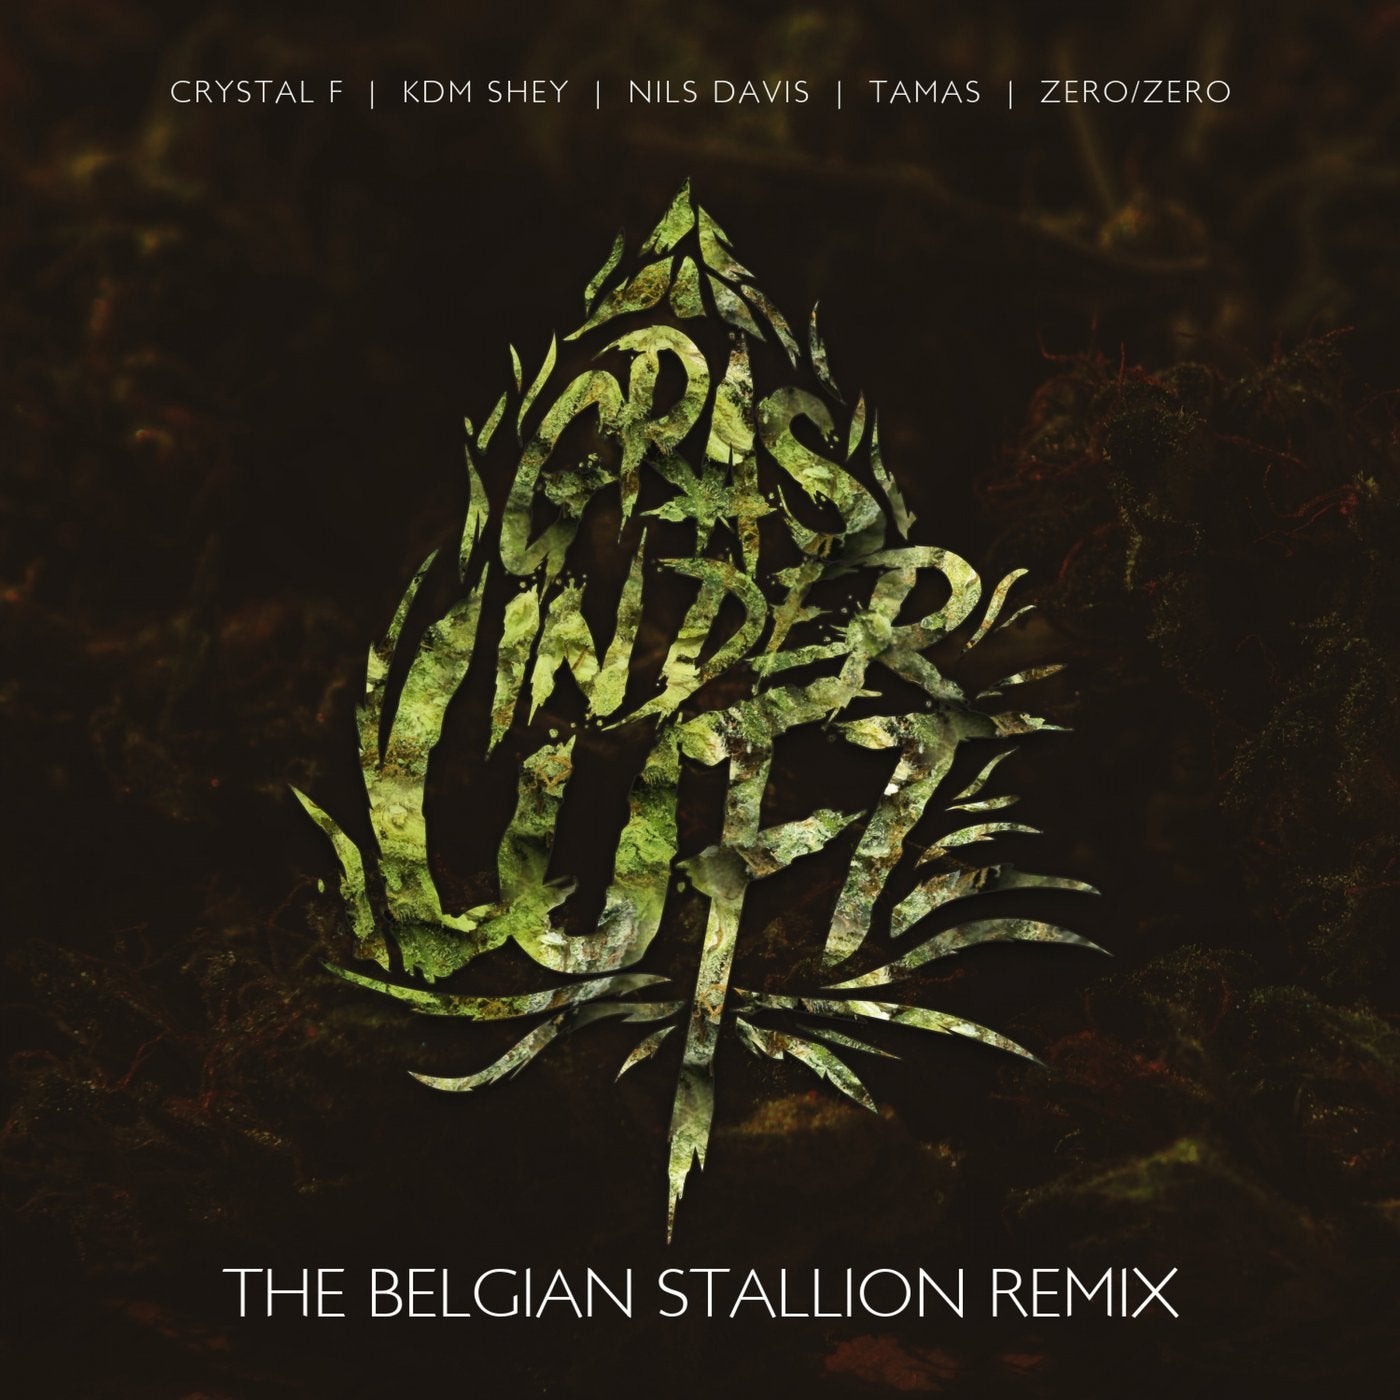 Gras in der Luft (The Belgian Stallion Remix)